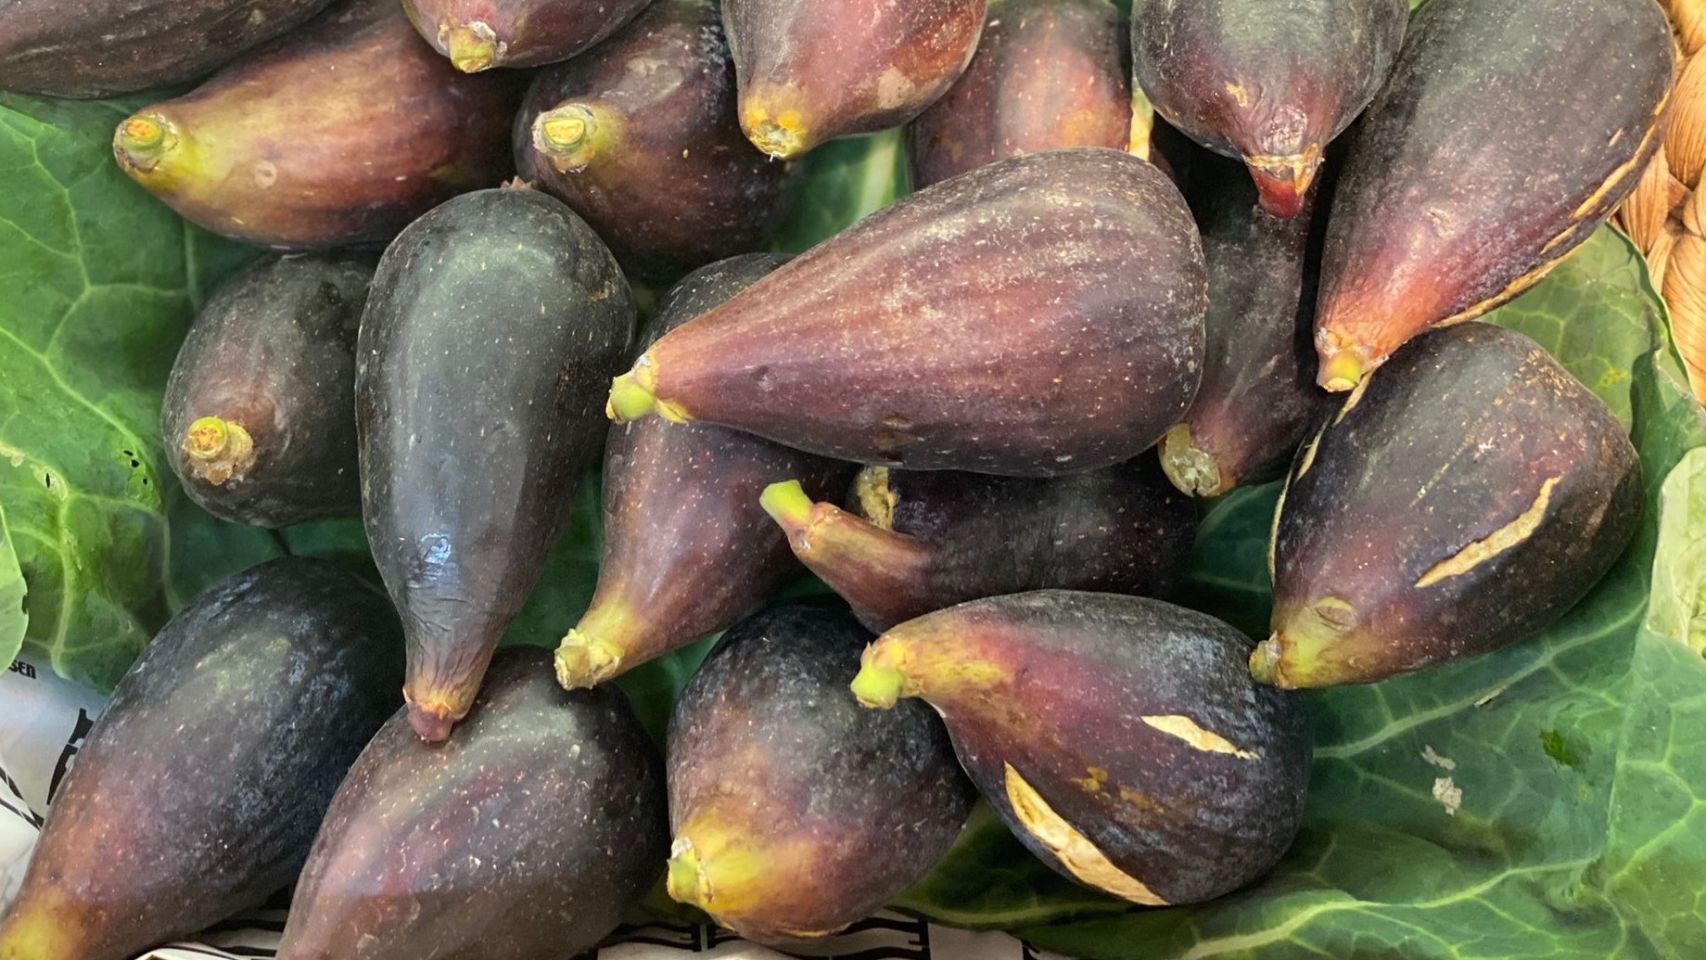 Los higos son una de las frutas en perfecta época para su consumo. Fuente: La Tienda de Lino